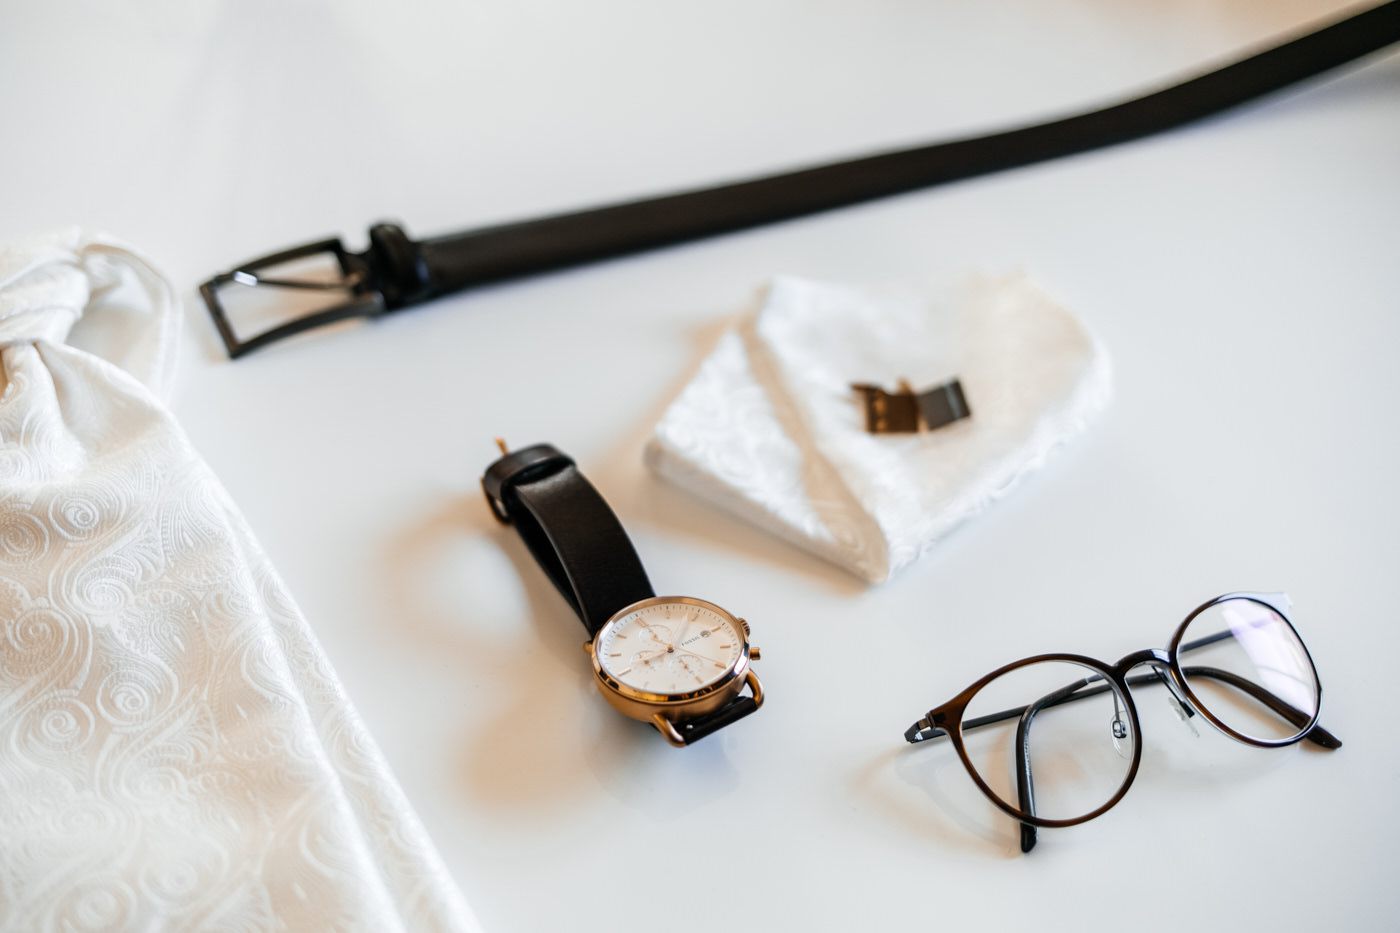 Die Sachen von Bräutigam - Brille, Uhr, Manschettenknöpfe und Gürtel. 